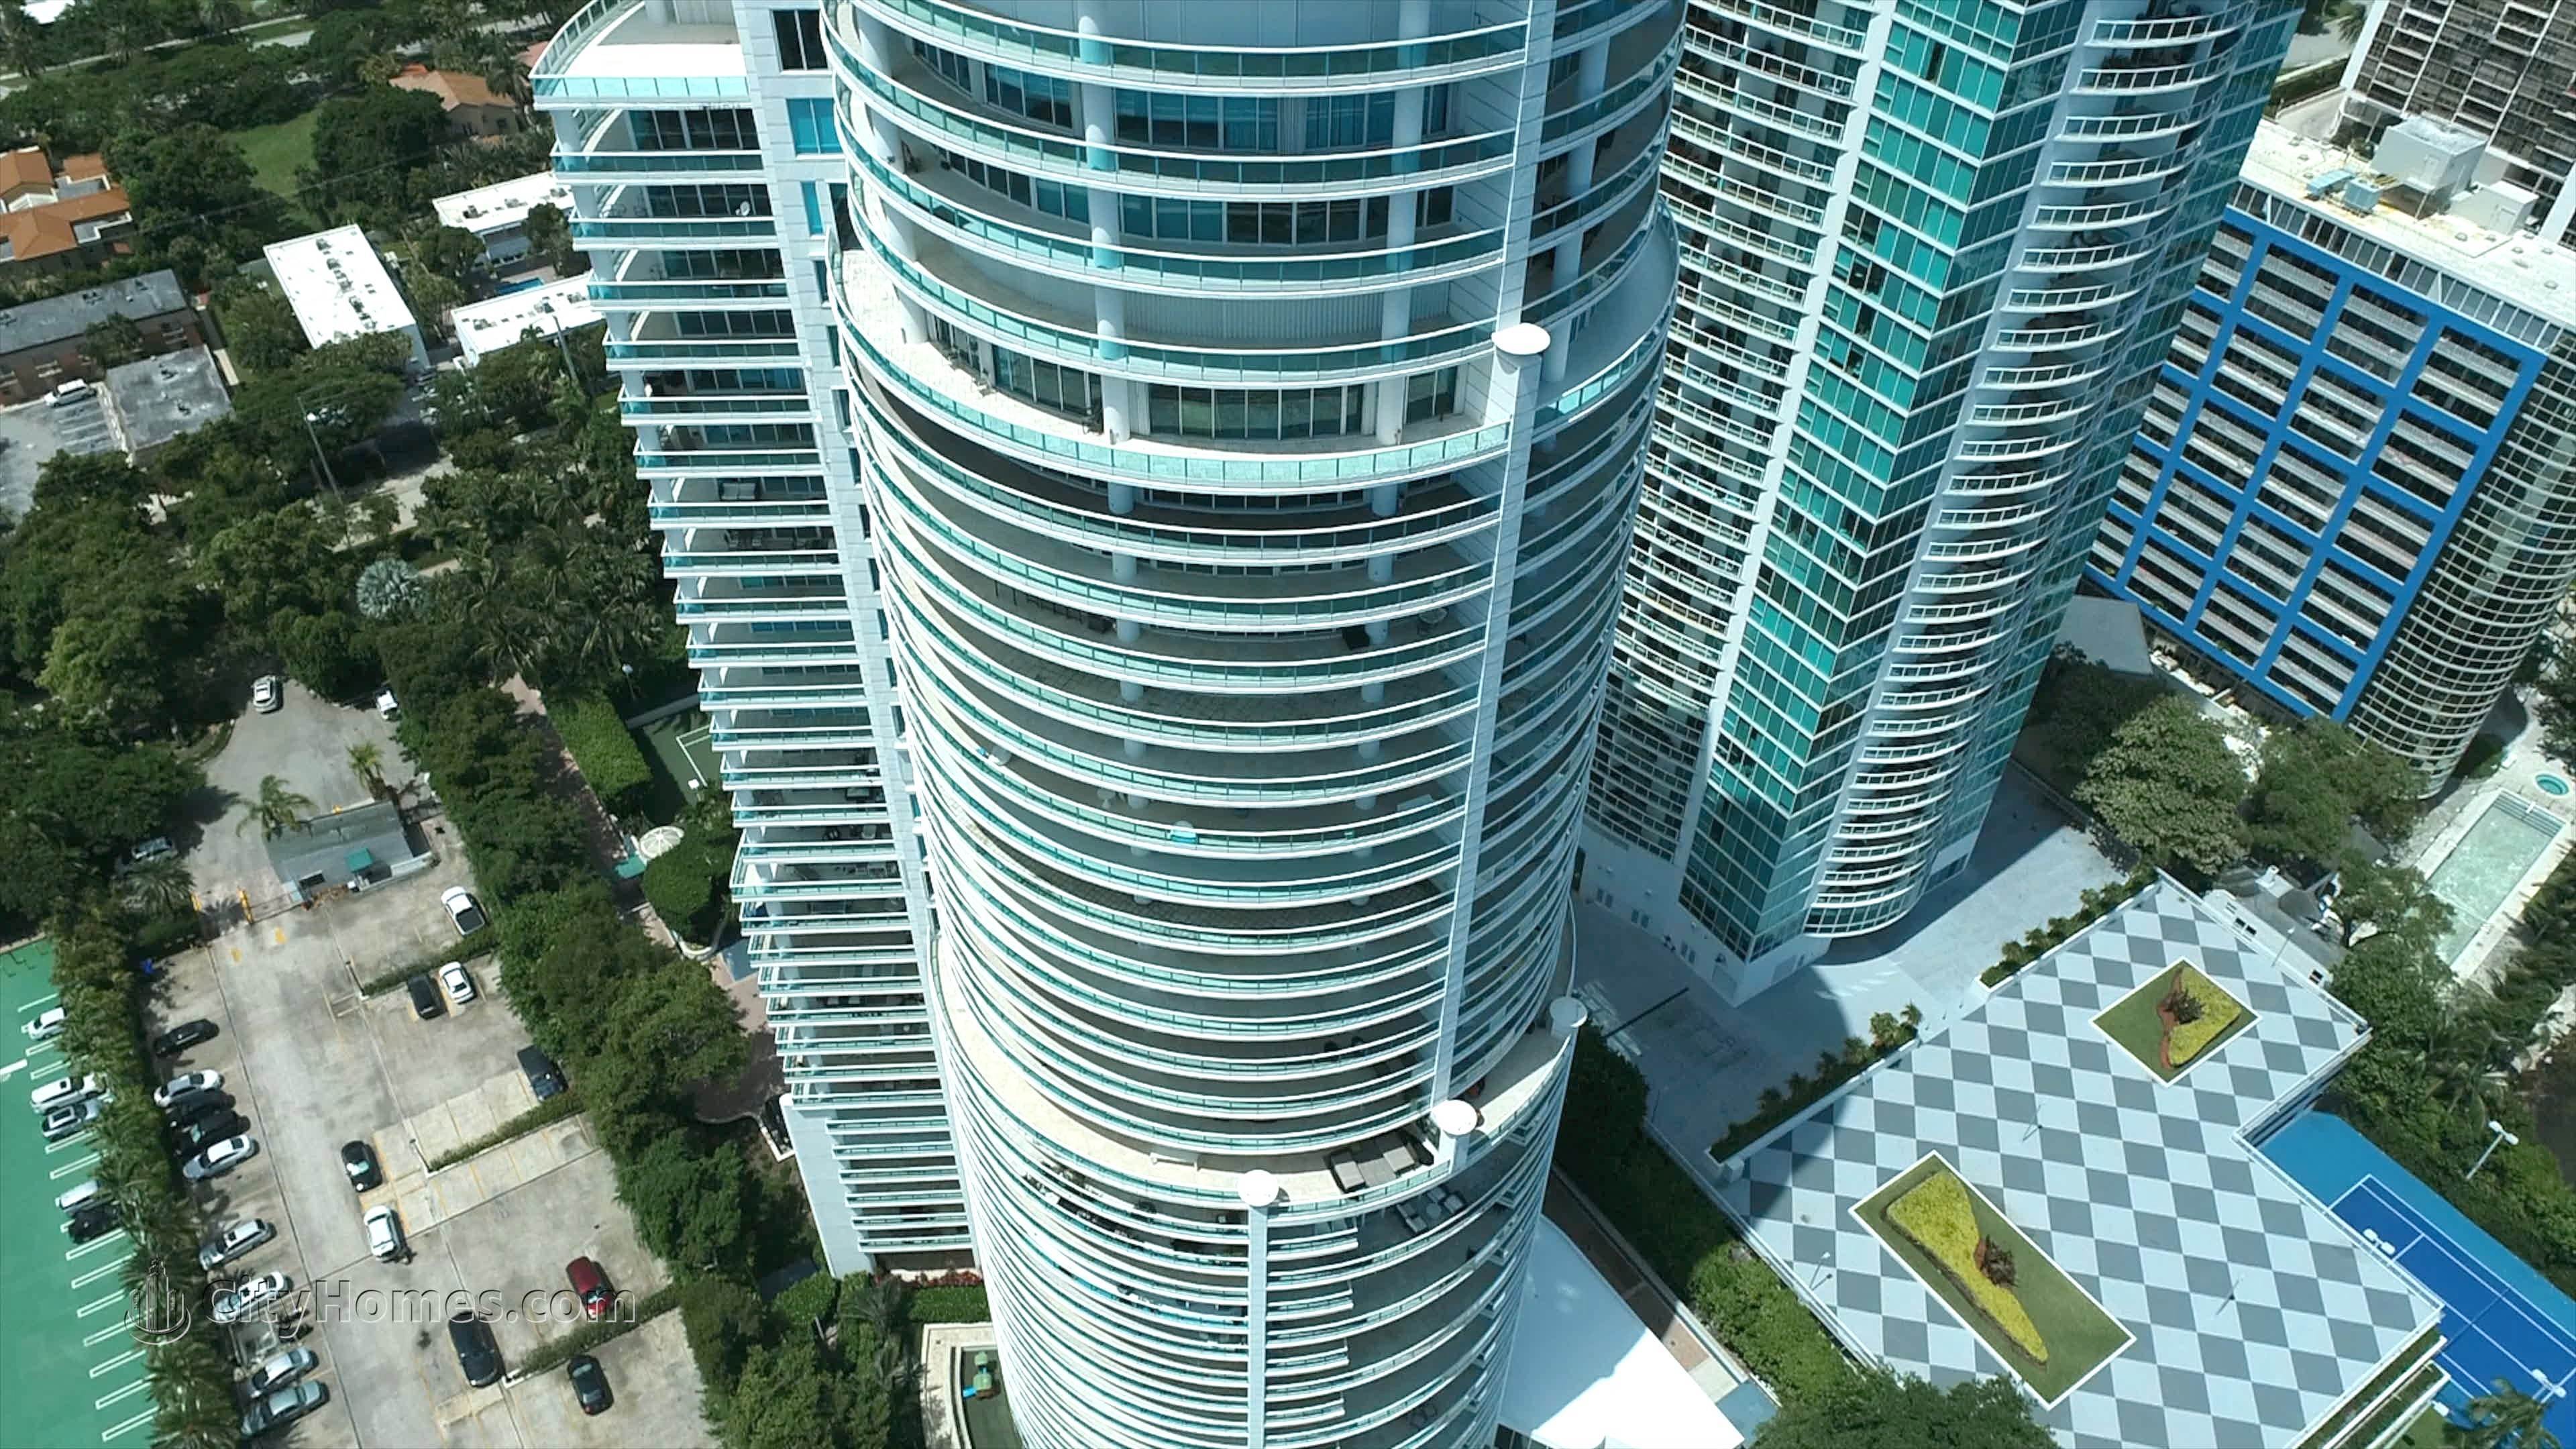 5. Bristol Tower Brickell здание в 2127 Brickell Avenue, Brickell, Miami, FL 33129